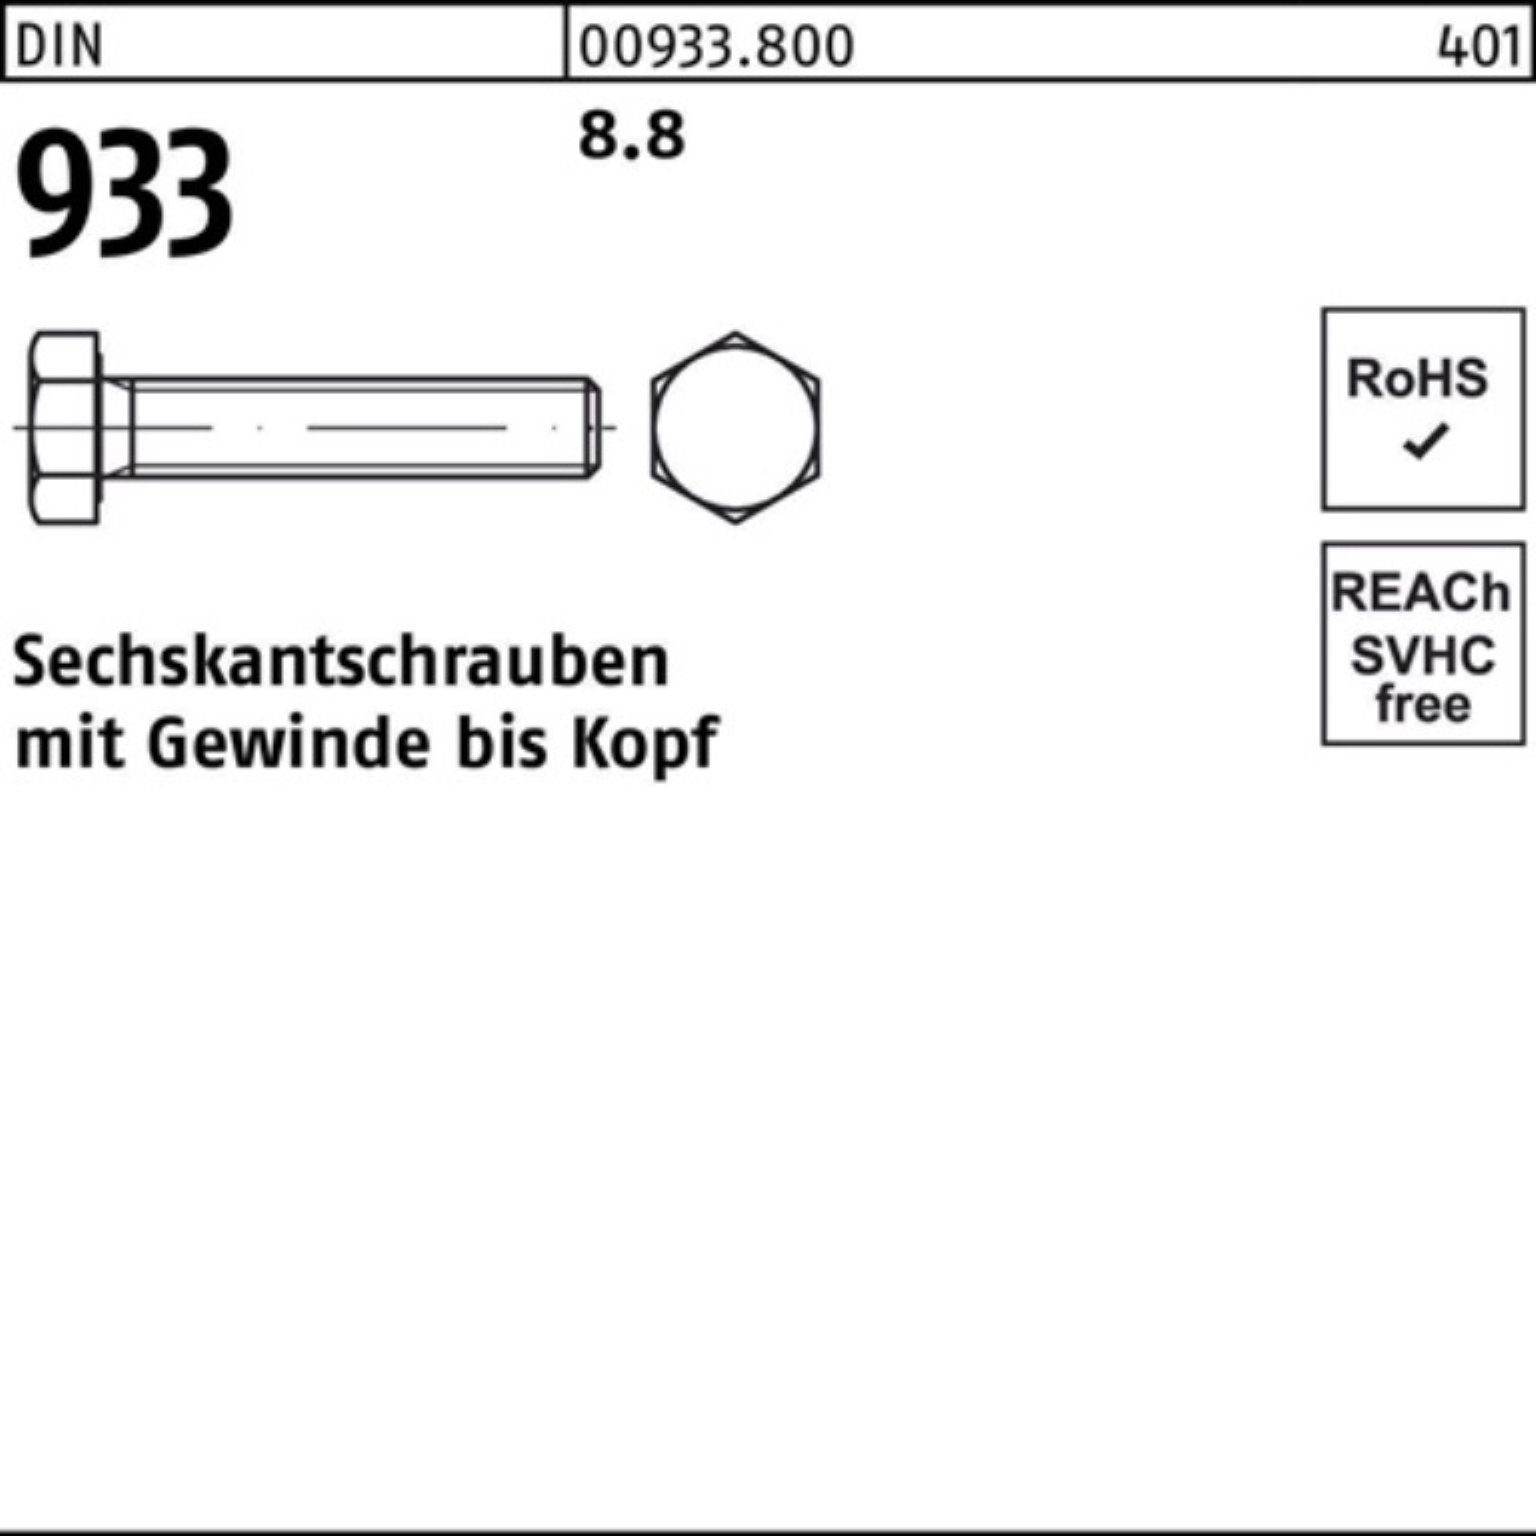 8 DIN M36x Reyher 1 100er 933 Stück 933 Sechskantschraube 90 DIN Pack VG Sechskantschraube 8.8